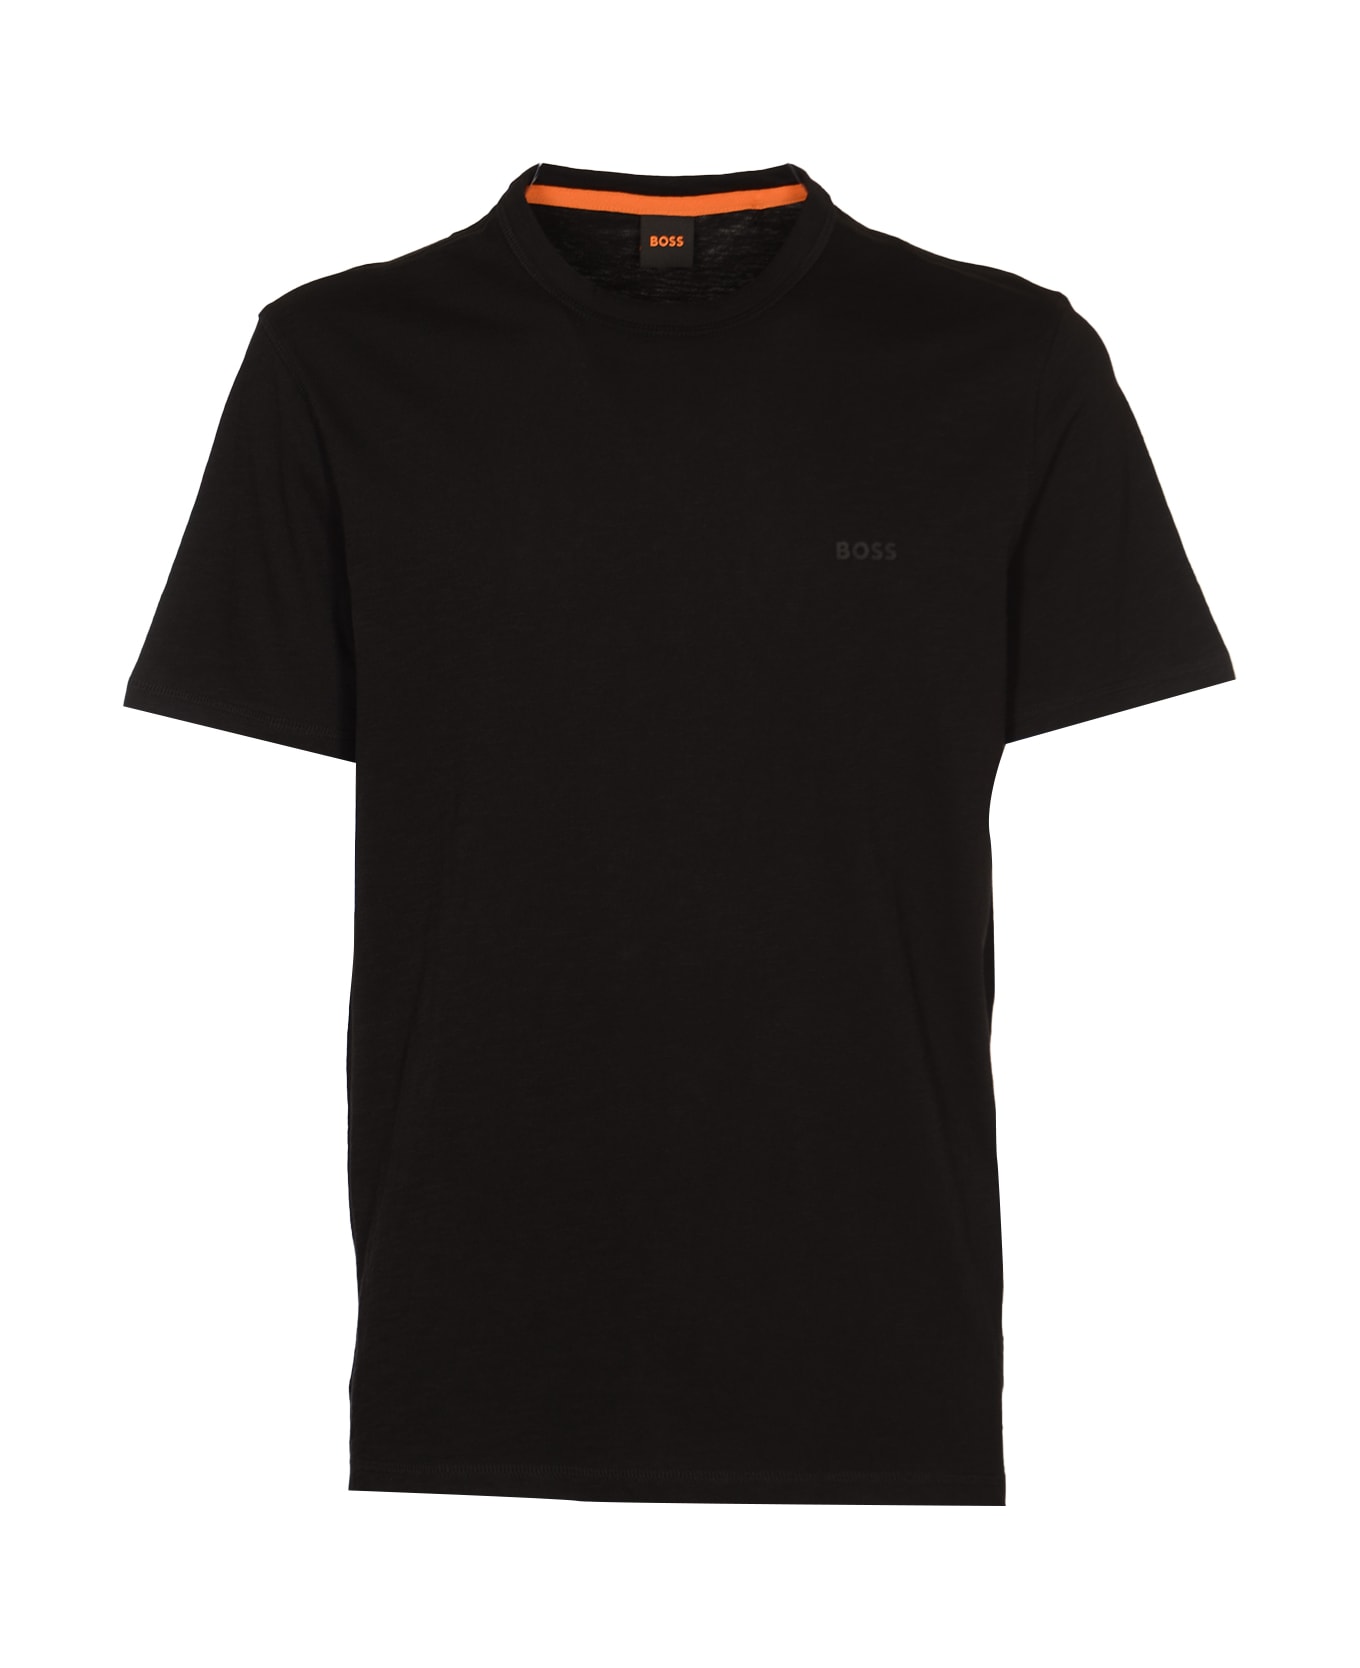 Hugo Boss Logo T-shirt - Black